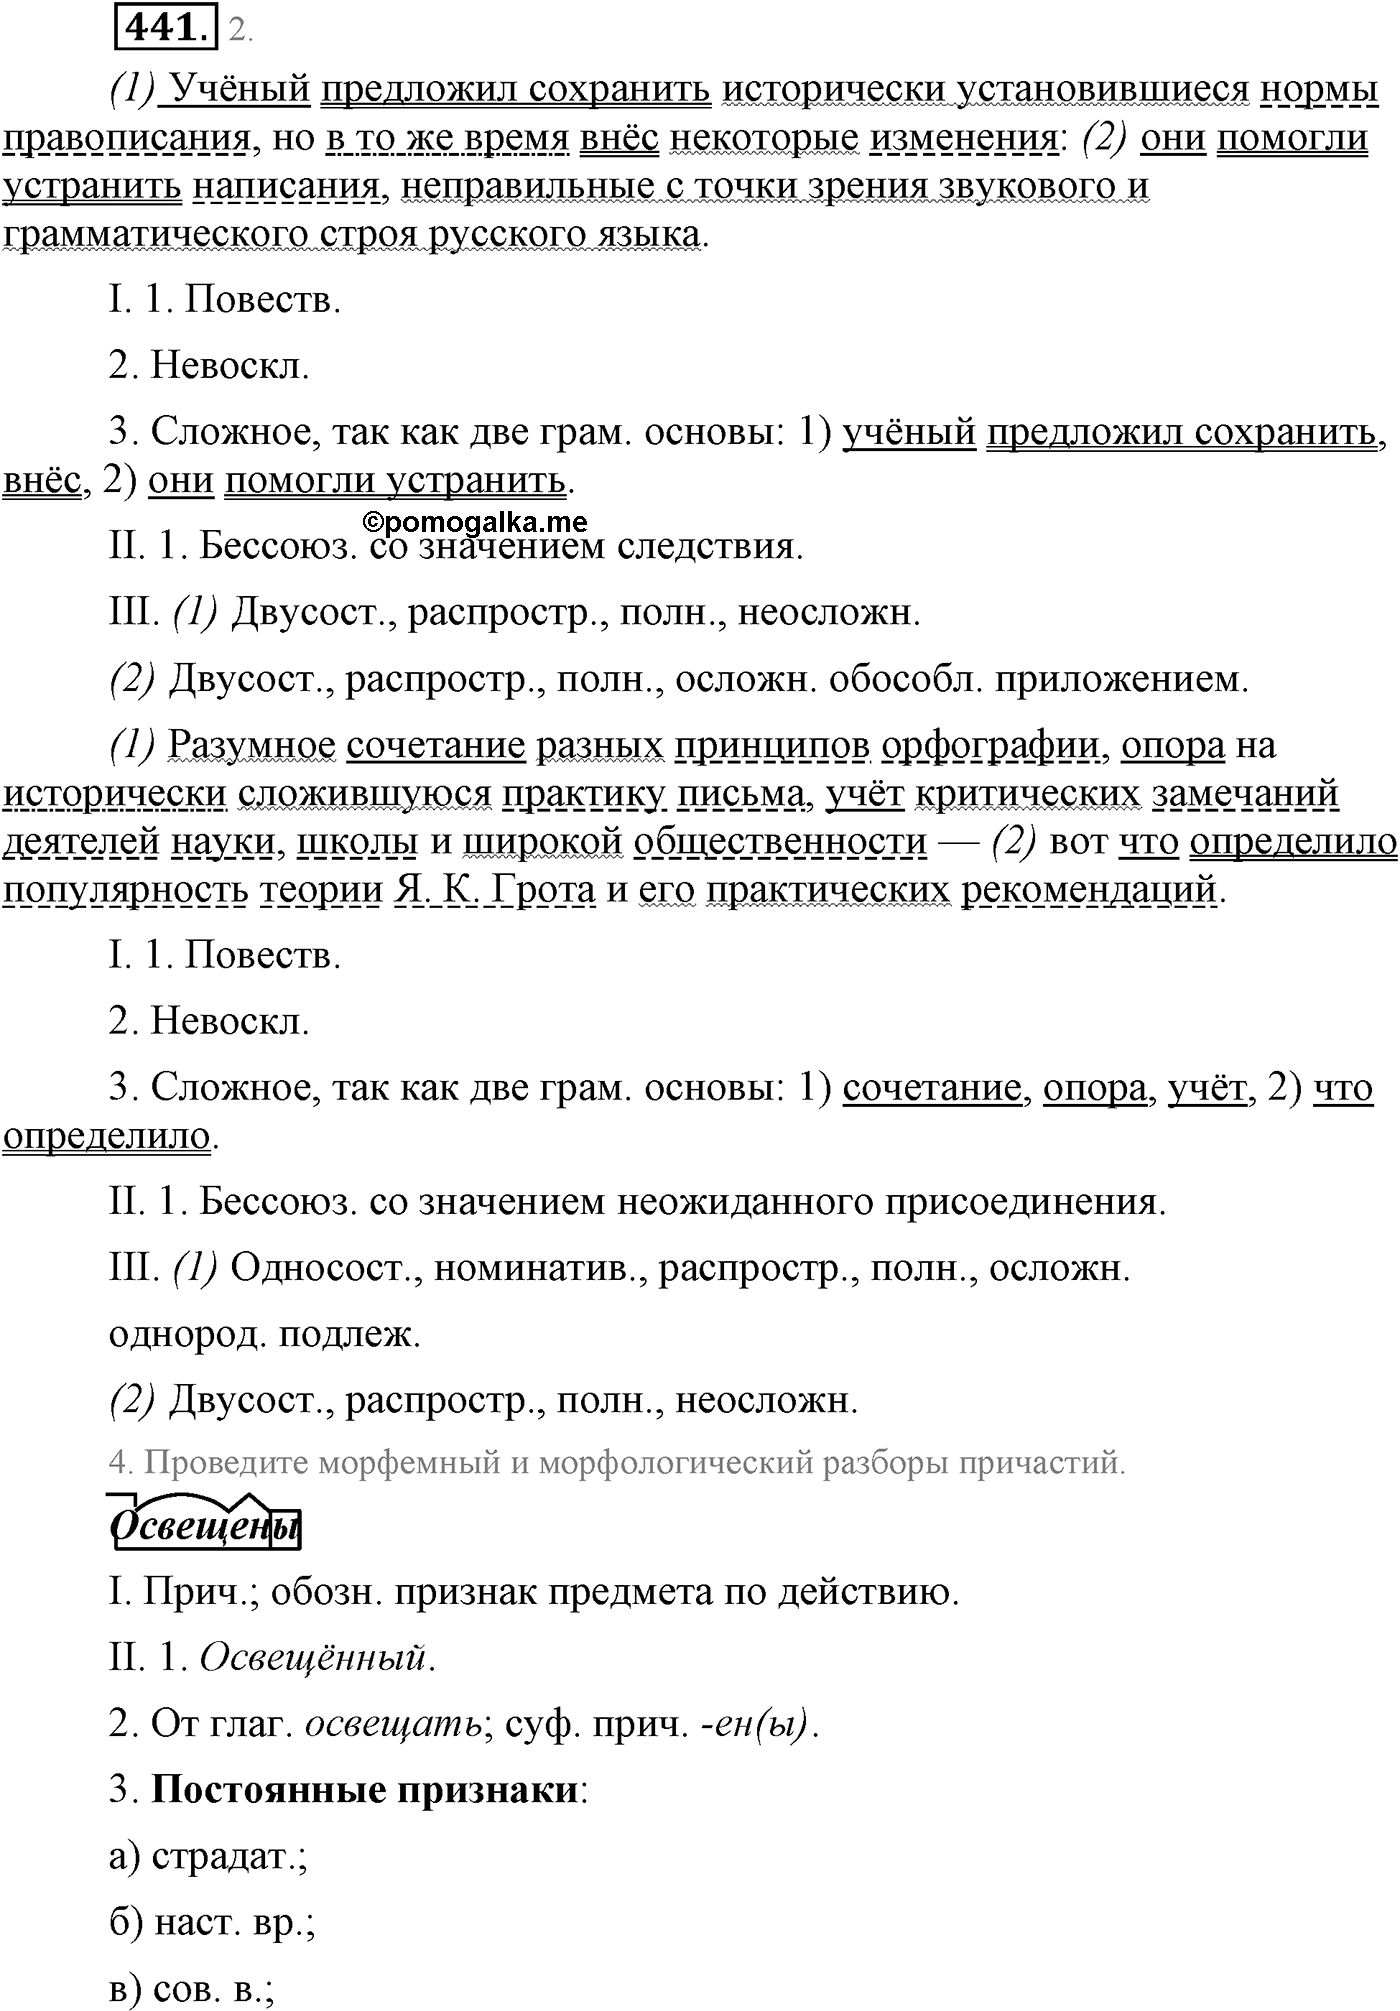 упражнение №441 русский язык 9 класс Львова